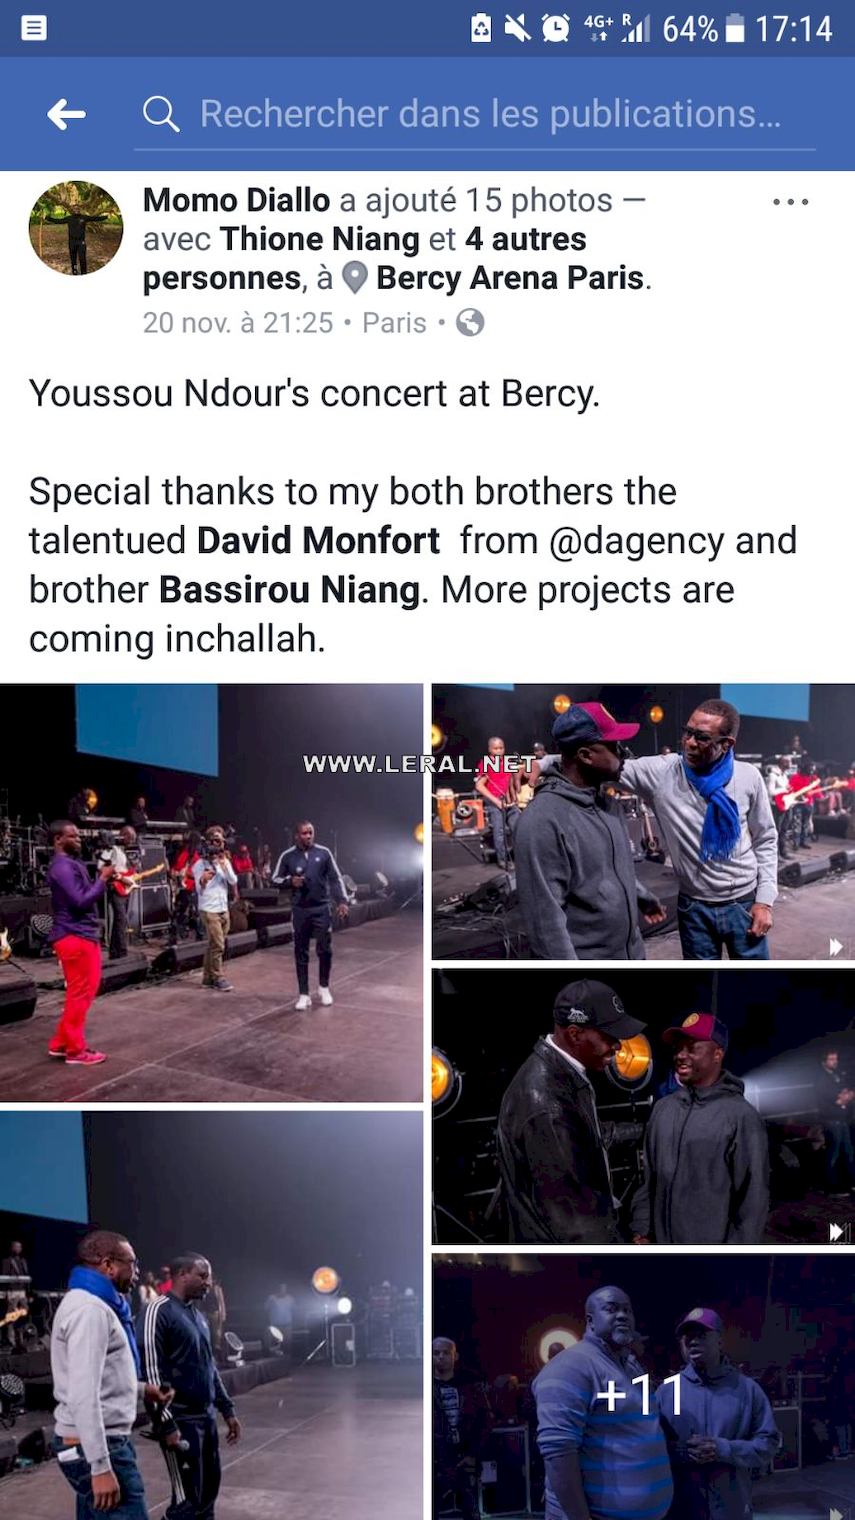 Bercy 2017 - Youssou Ndour: "Un grand merci à mes deux frères, le talentueux David Monfort de Dagency et son frère, Bassirou Niang"